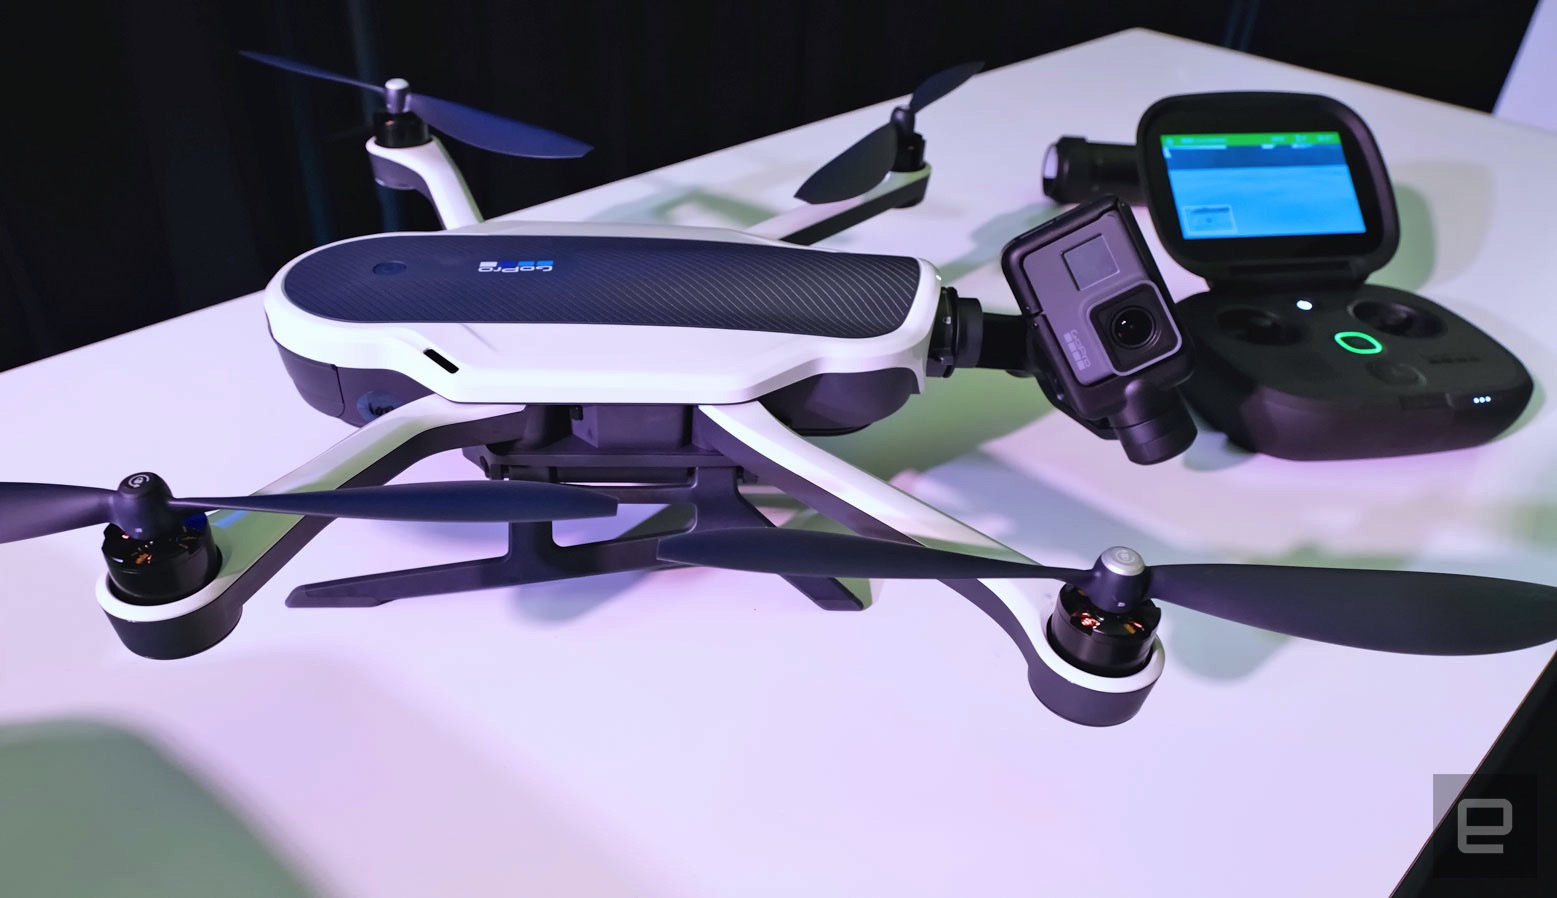 maker of karma quadcopter drone